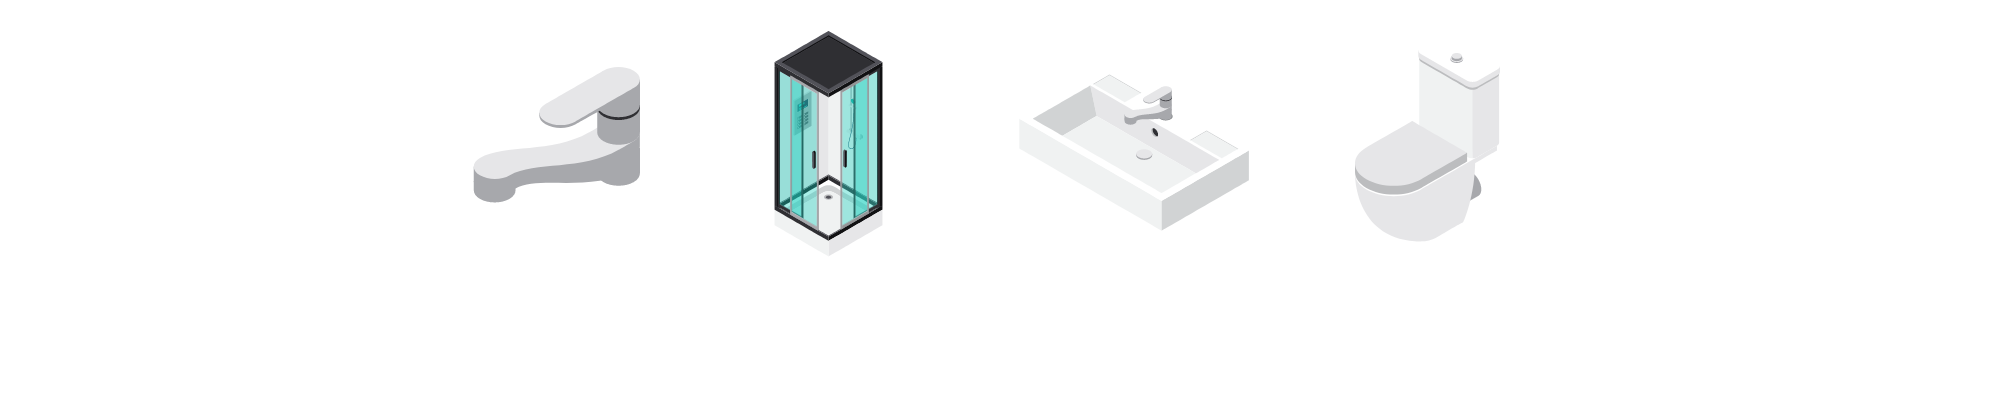 SanitShop Plus - Votre Boutique en Ligne de Sanitaire de Salle de Bain